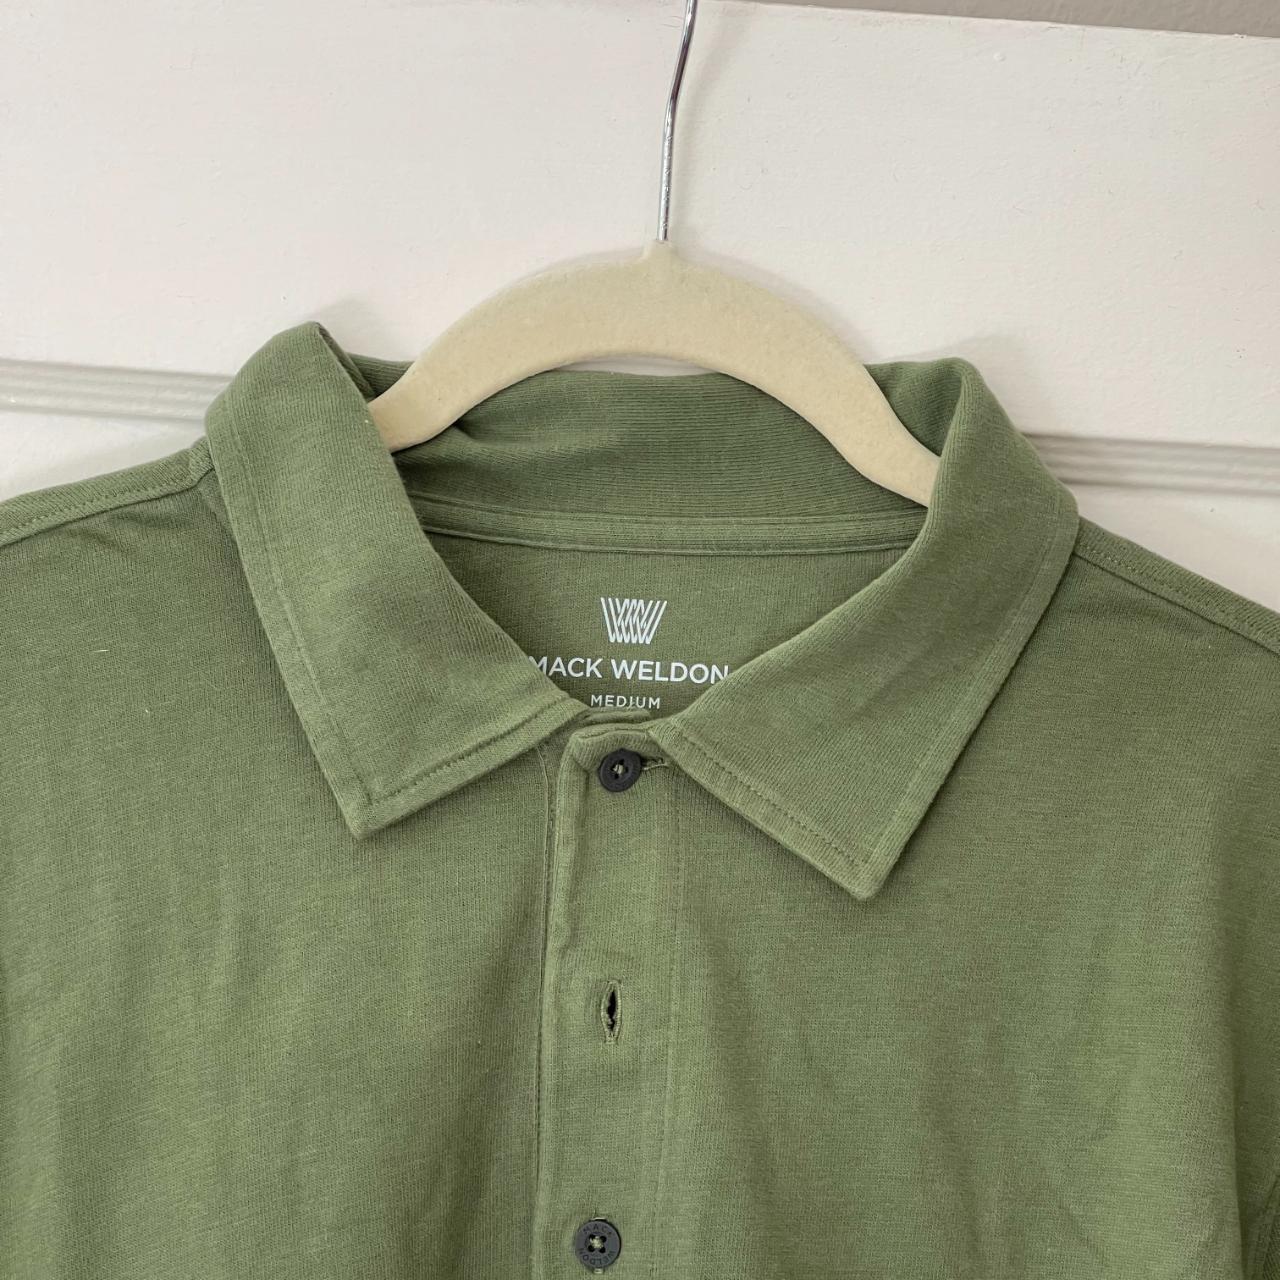 Mack Weldon green cotton polo shirt - Depop